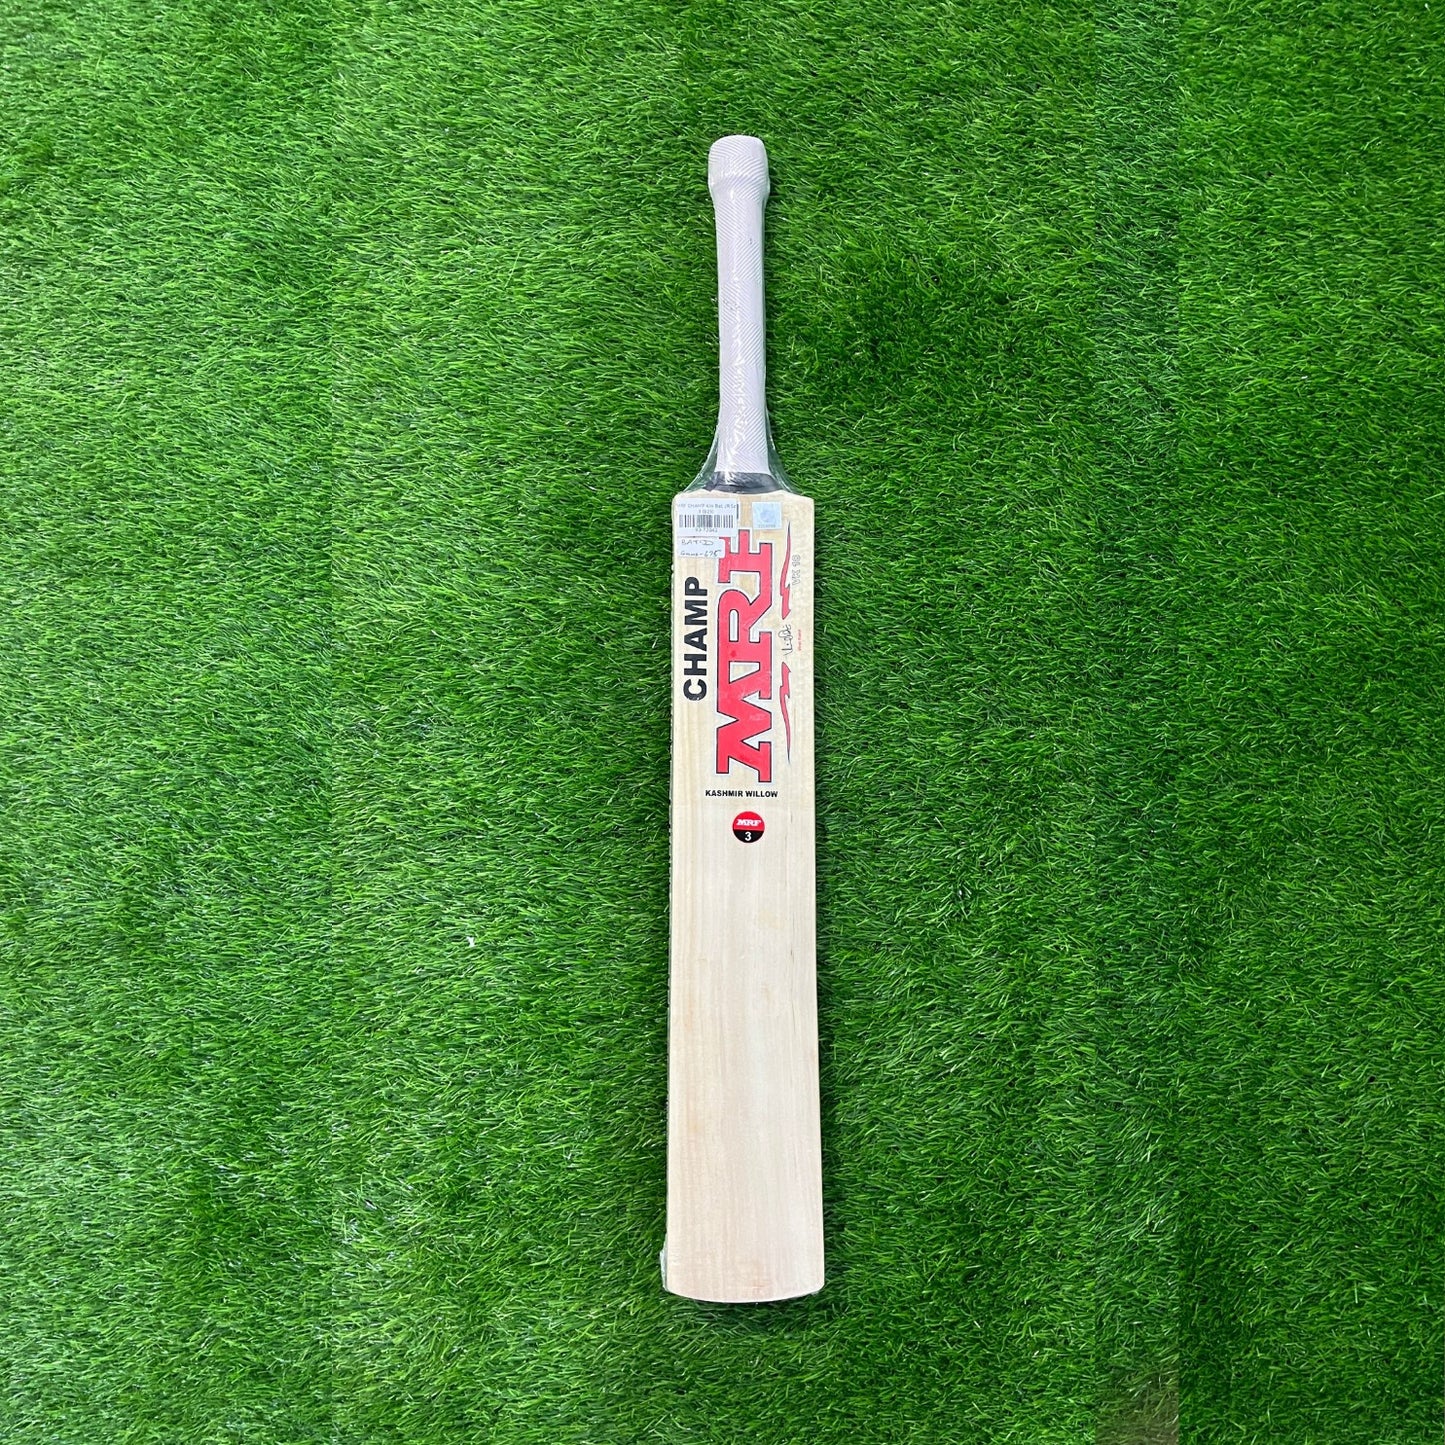 MRF KW CHAMP Kashmir Willow Cricket Bat - Junior Size 3 (Three)